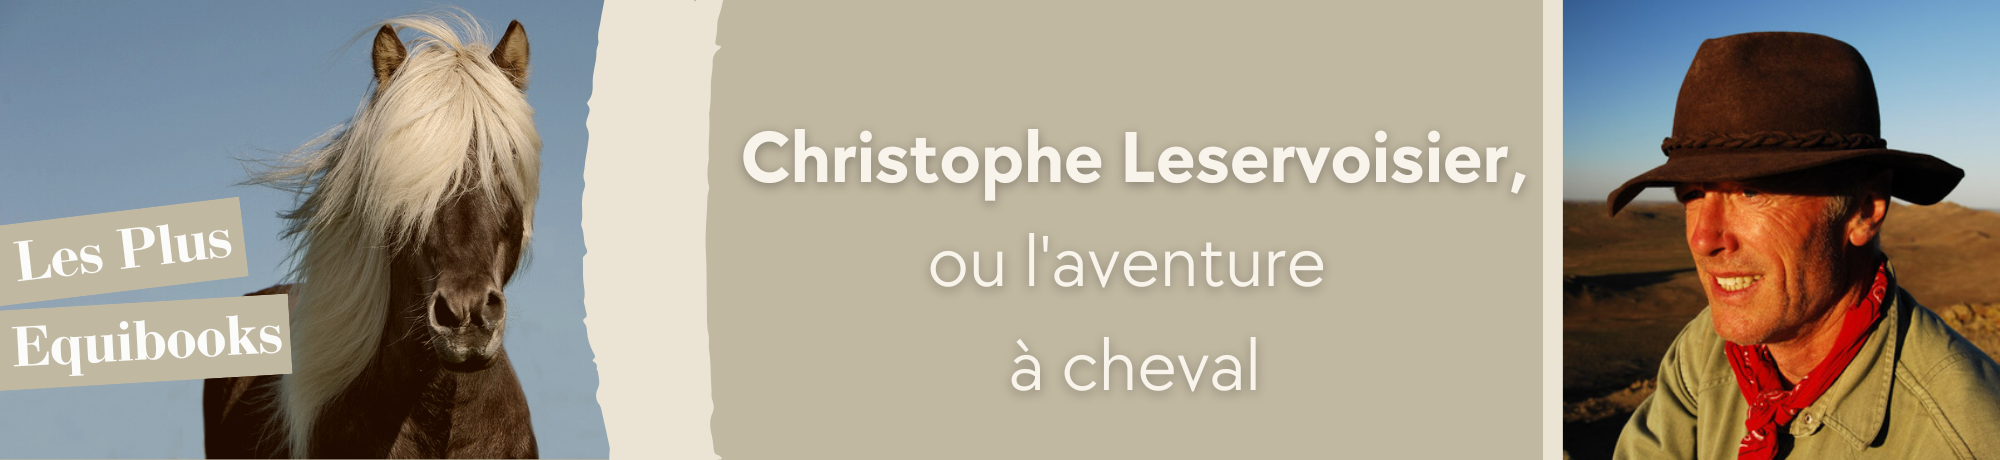 Christophe Leservoisier